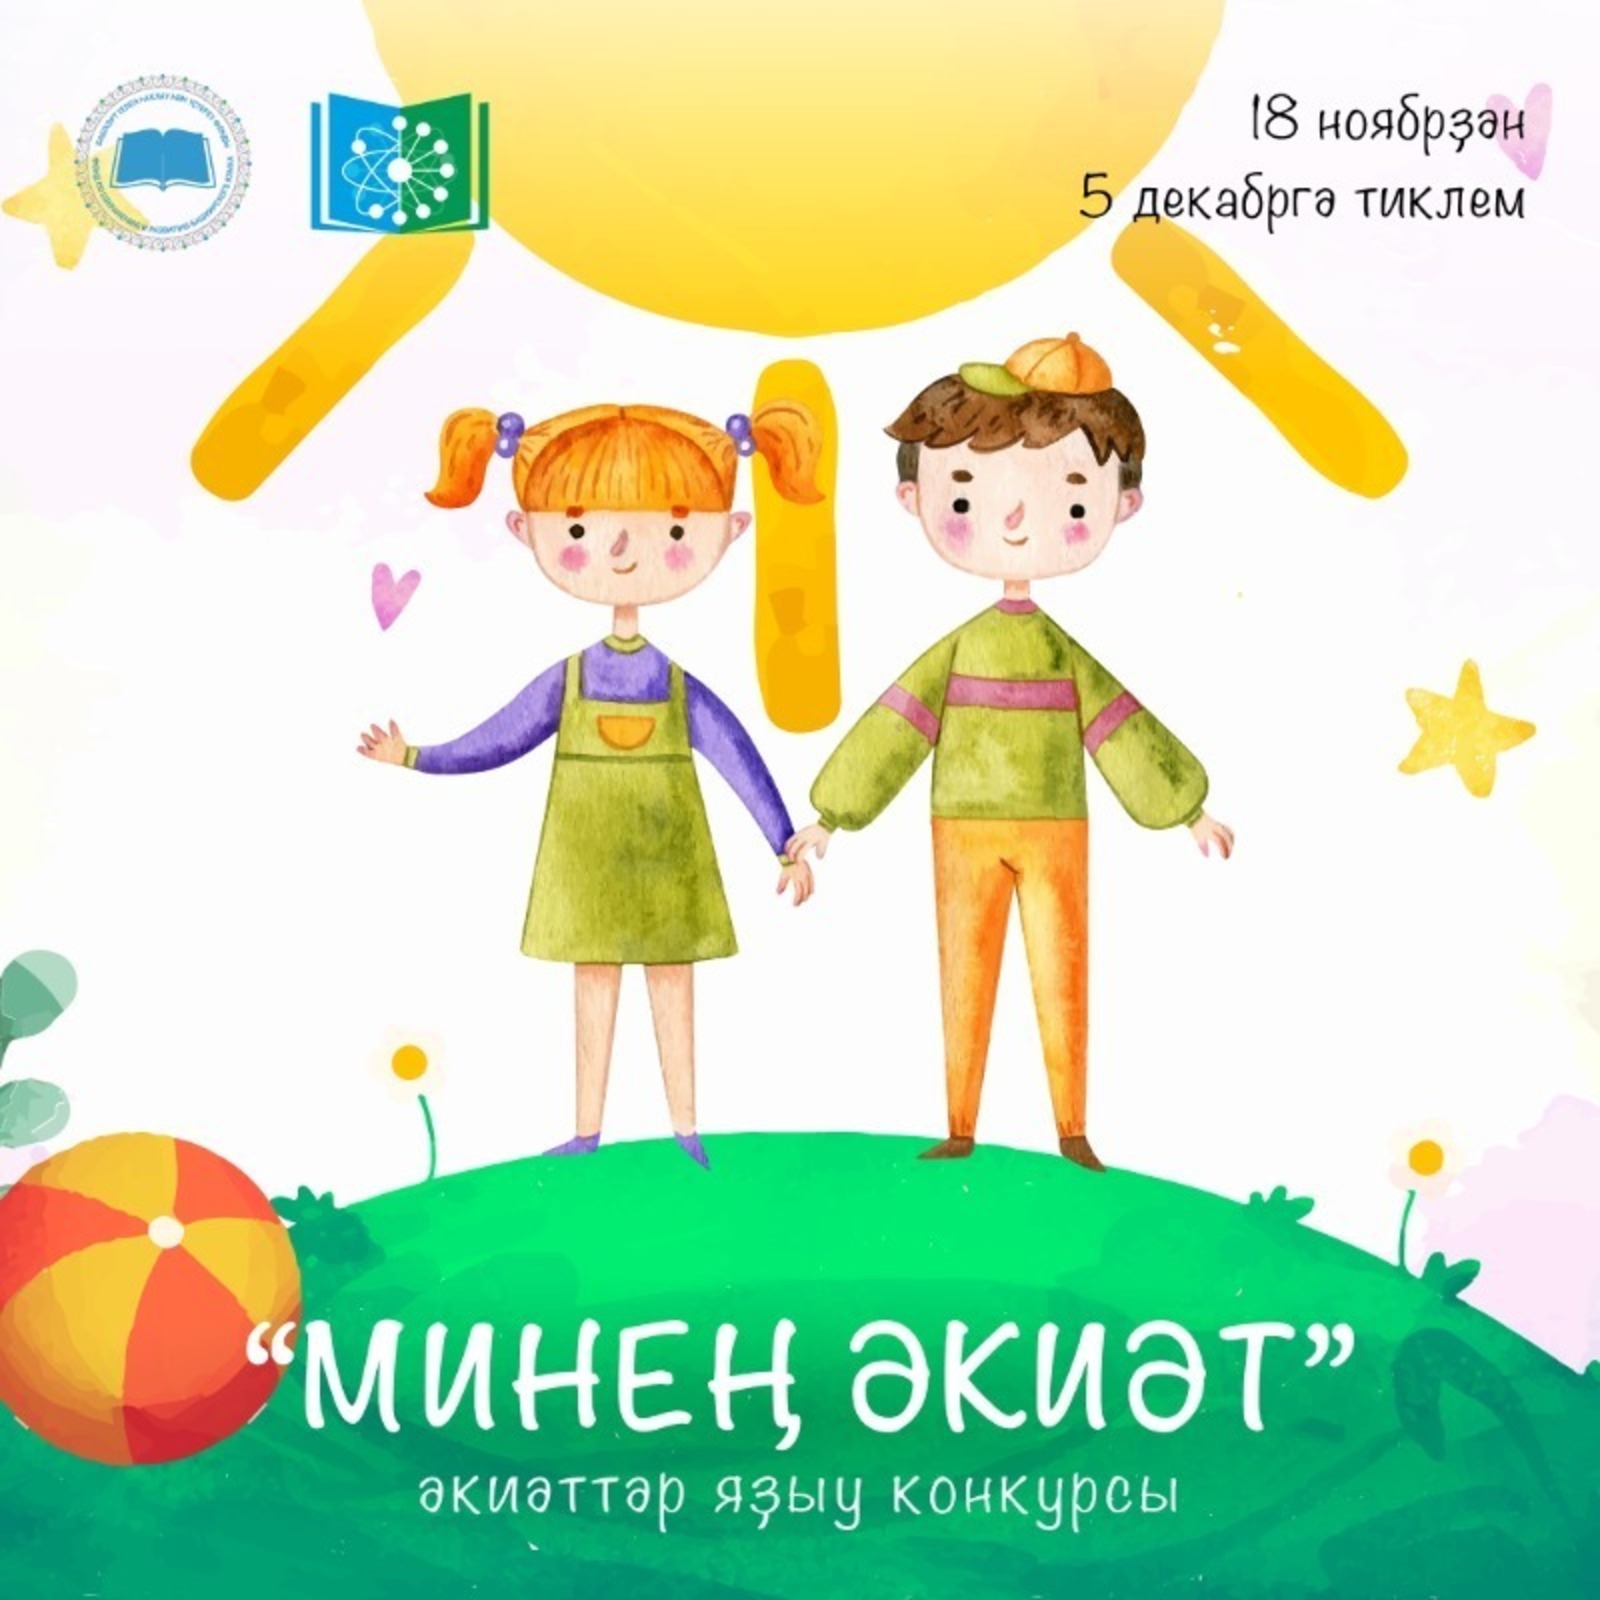 В Башкирии стартовал Межрегиональный конкурс сказок собственного сочинения «Моя сказка»